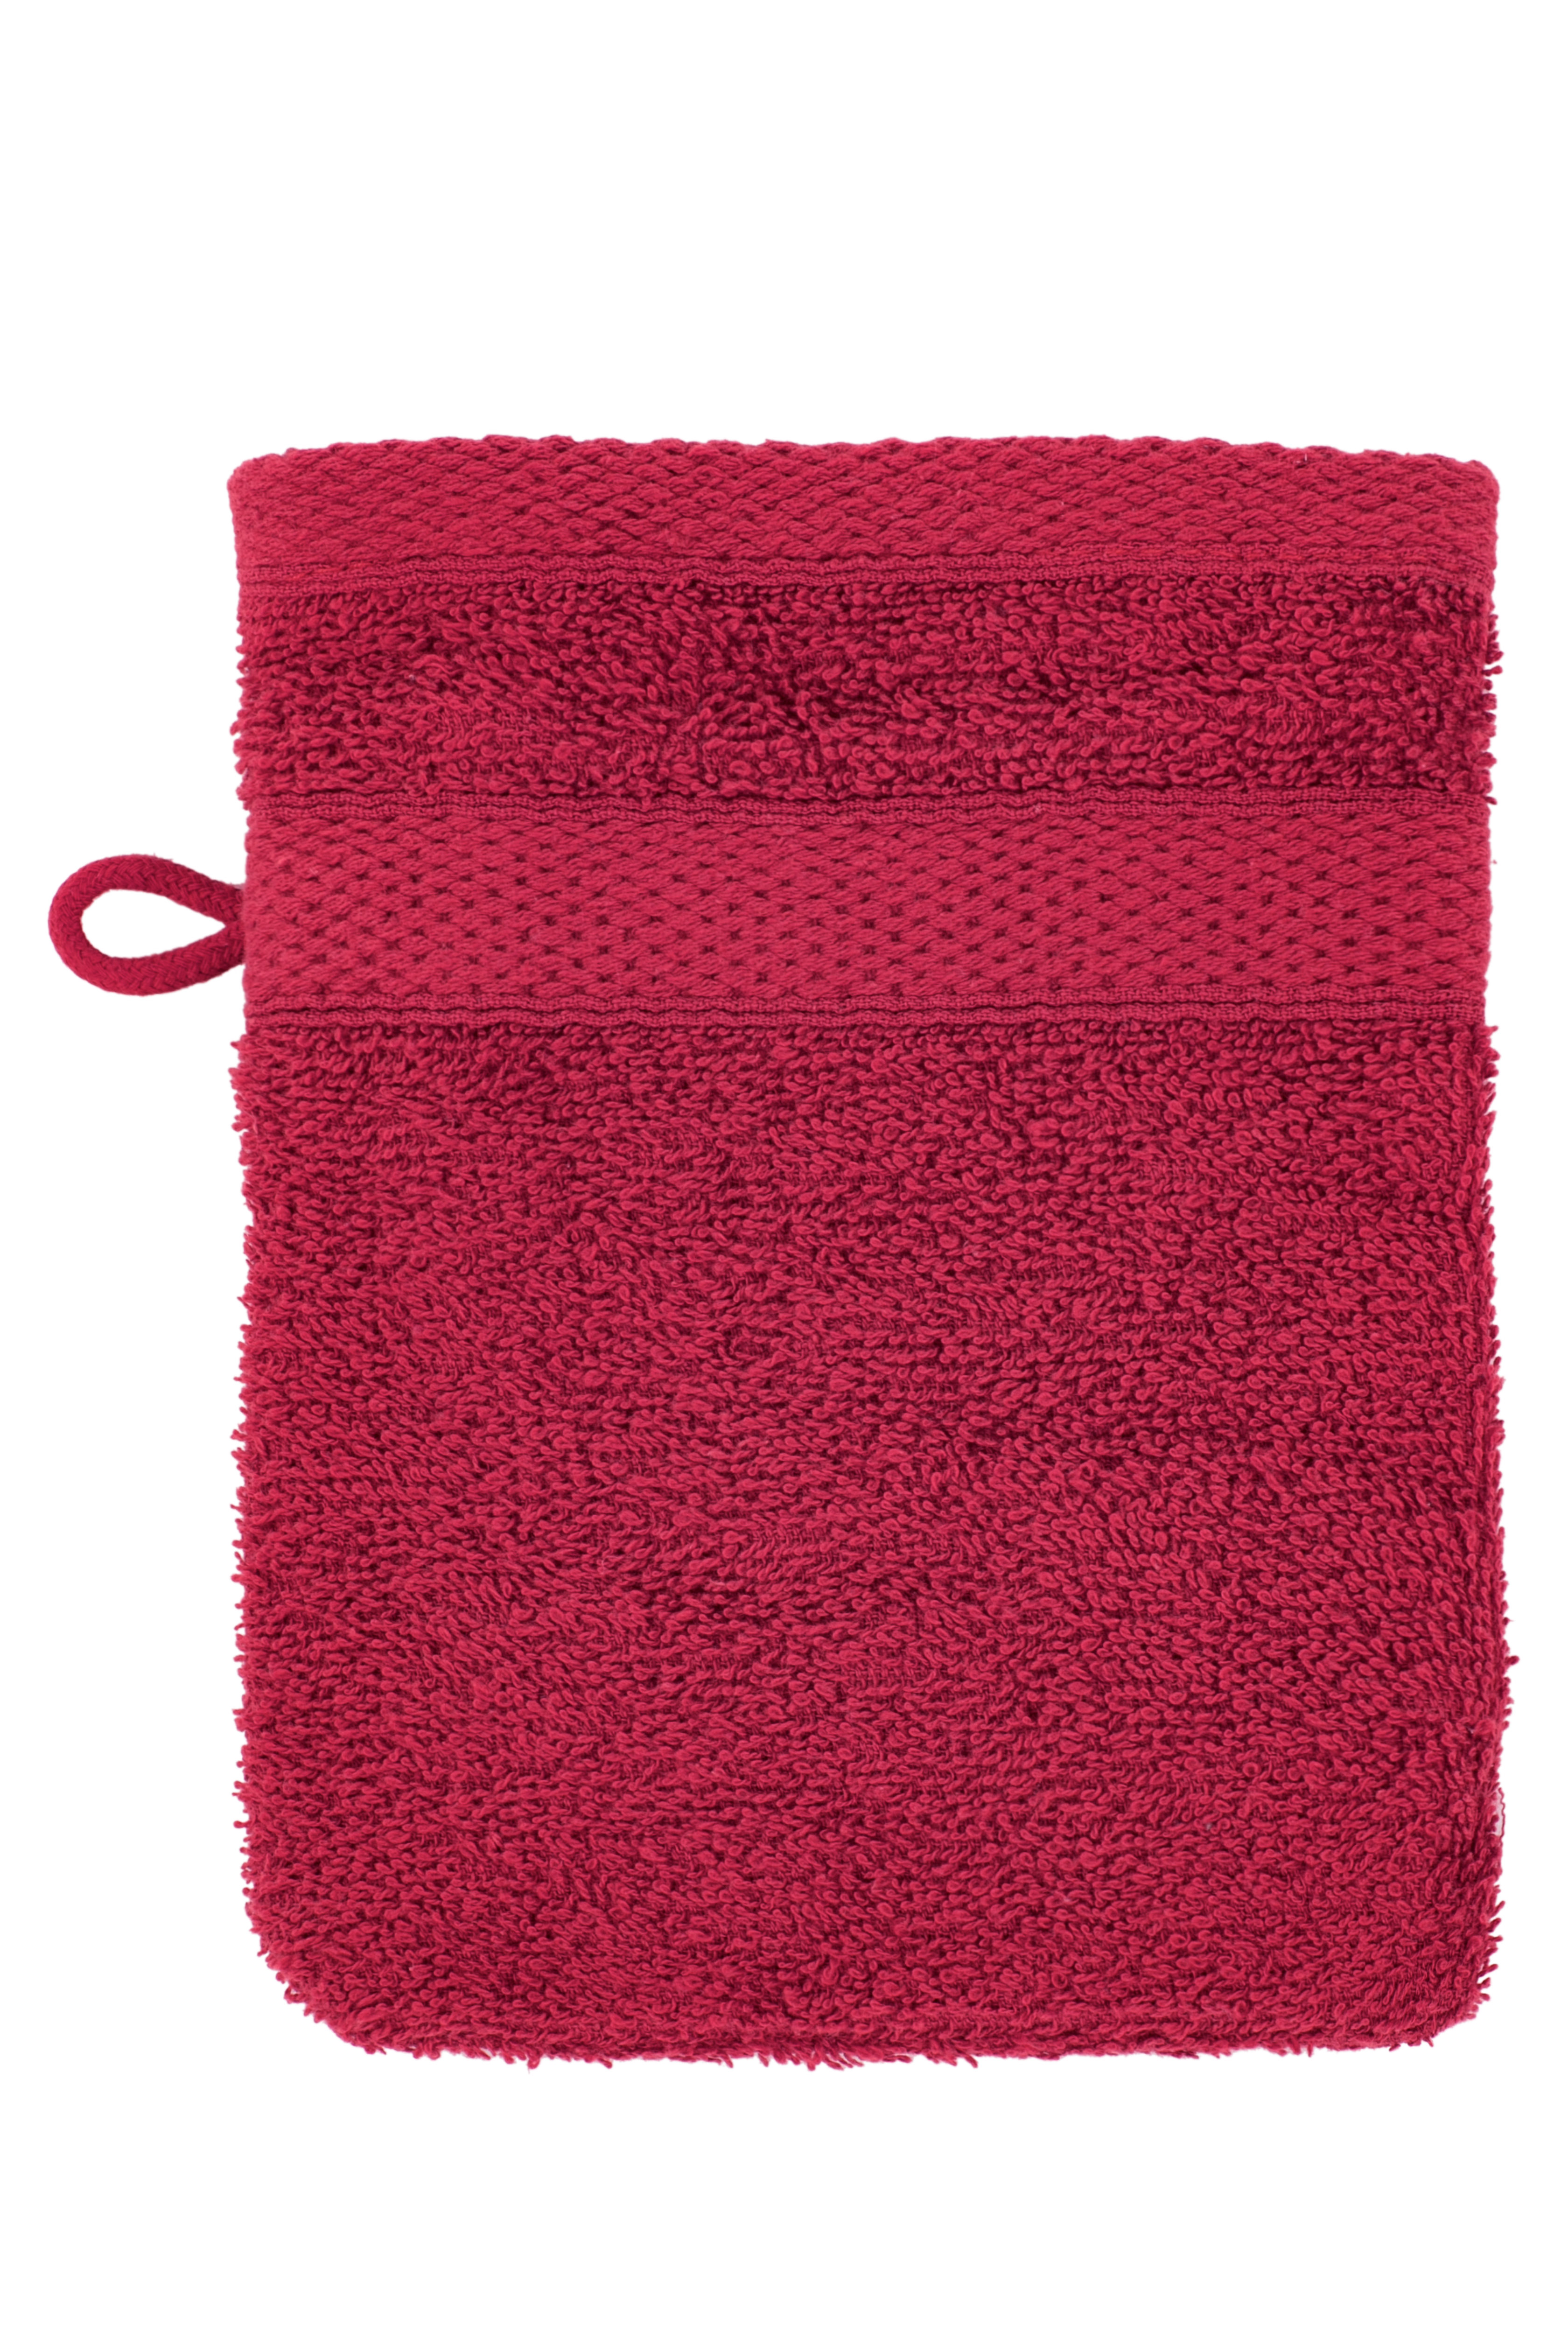 Gant de toilette 15x21cm, persian red - set2